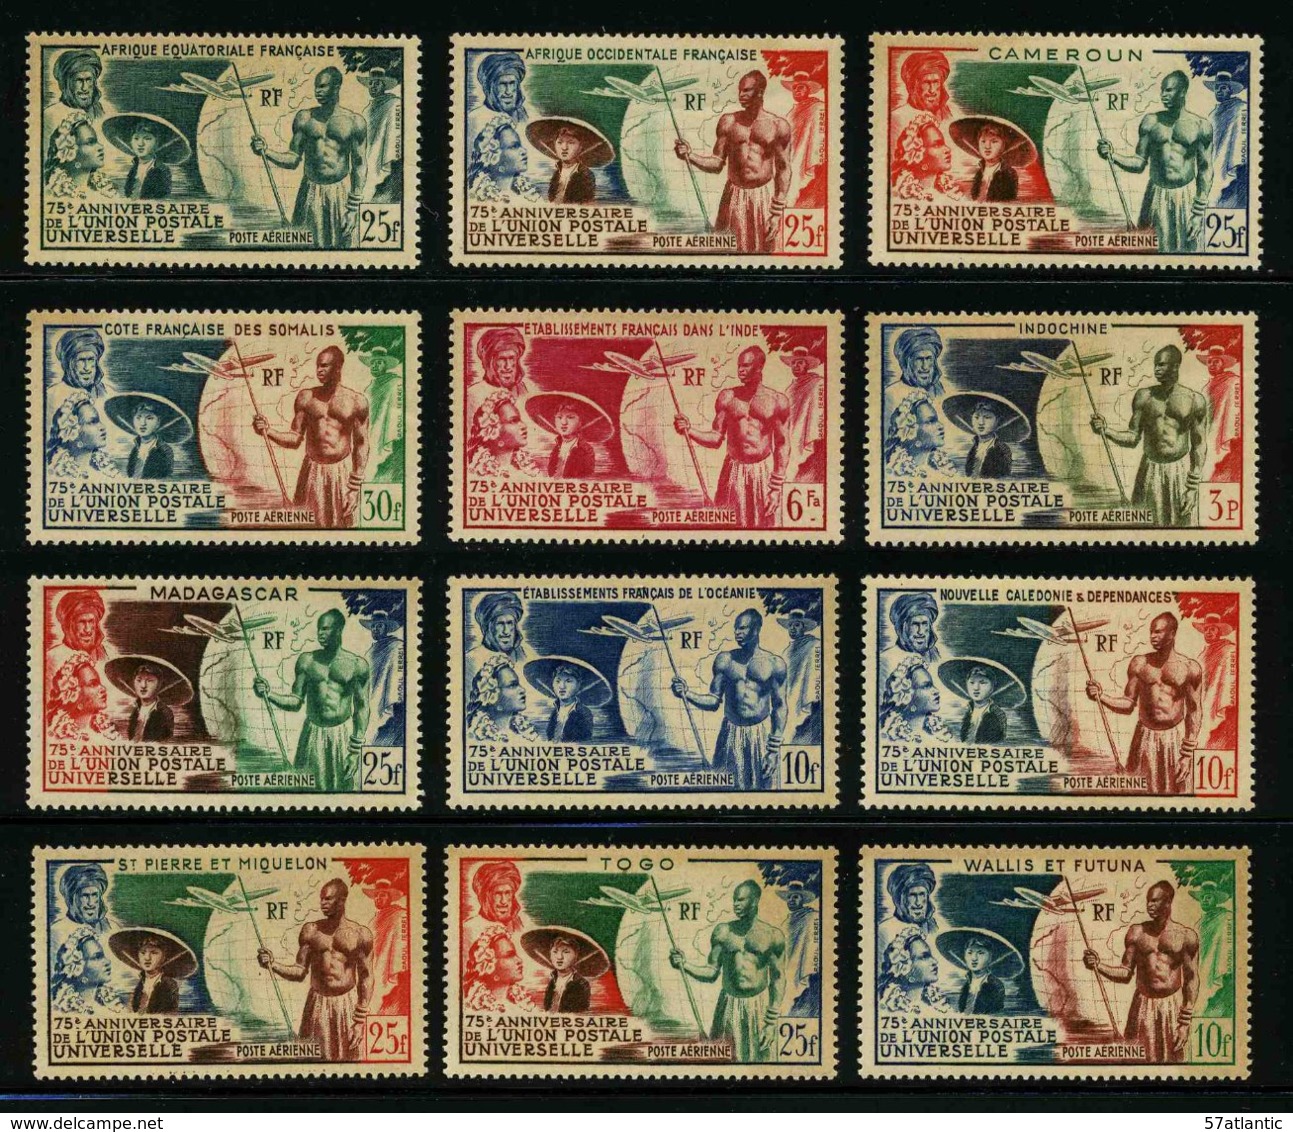 COLONIES FRANCAISES - GRANDE SERIE COLONIALE UPU 1949 - SERIE COMPLETE 12 TIMBRES NEUFS - 1949 75e Anniversaire De L'UPU